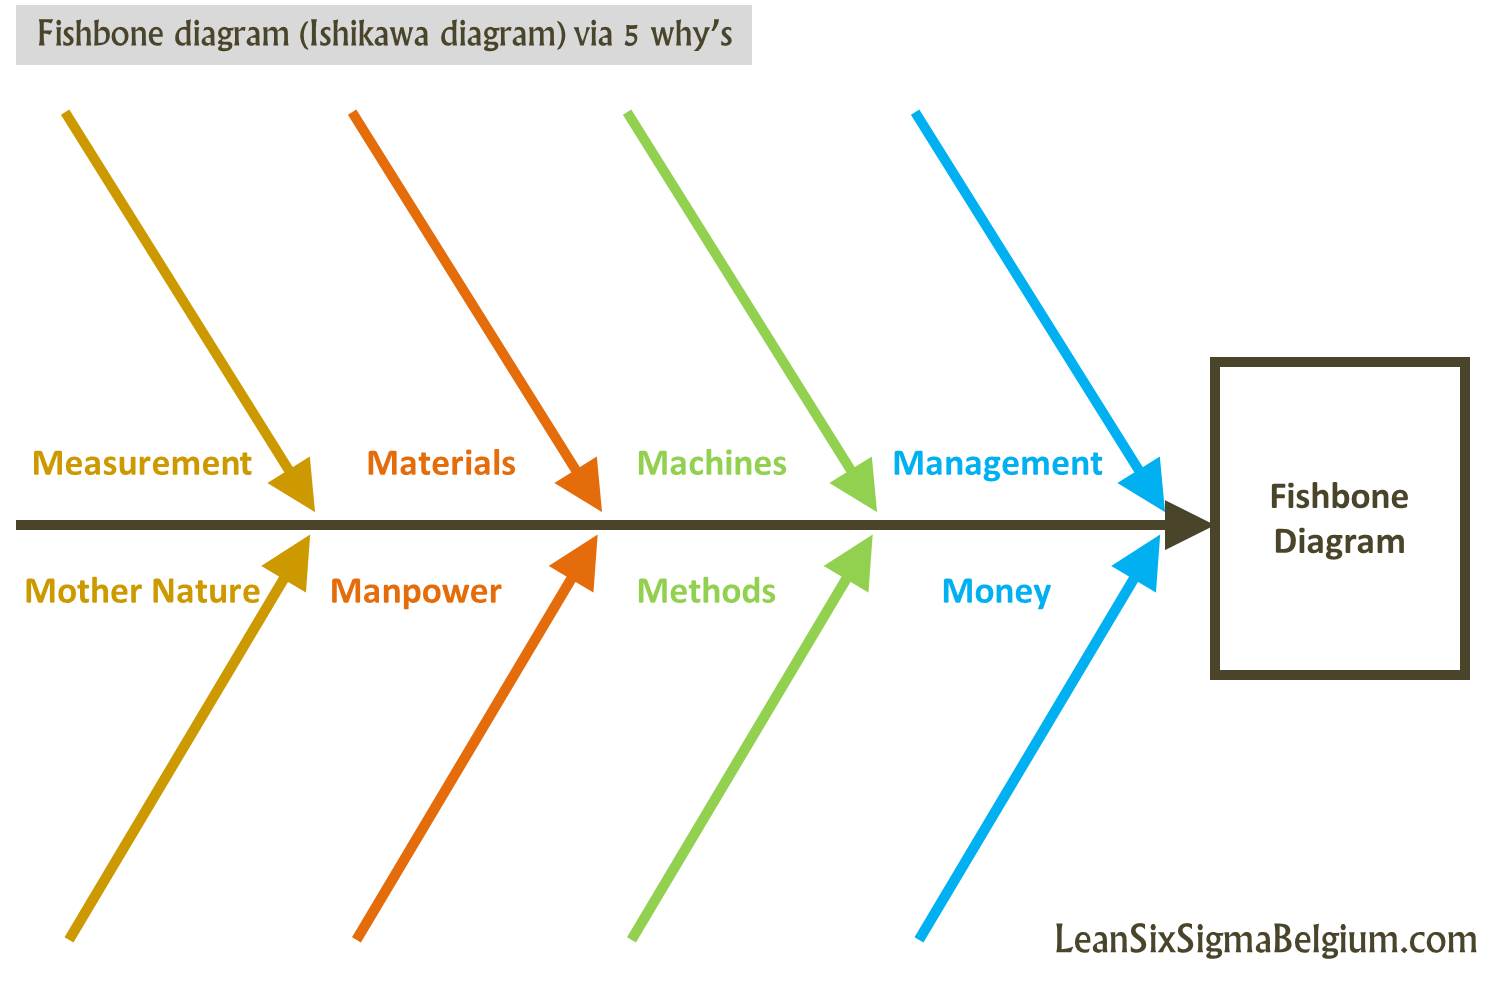 Fishbone diagram (Ishikawa diagram) via 5 why's